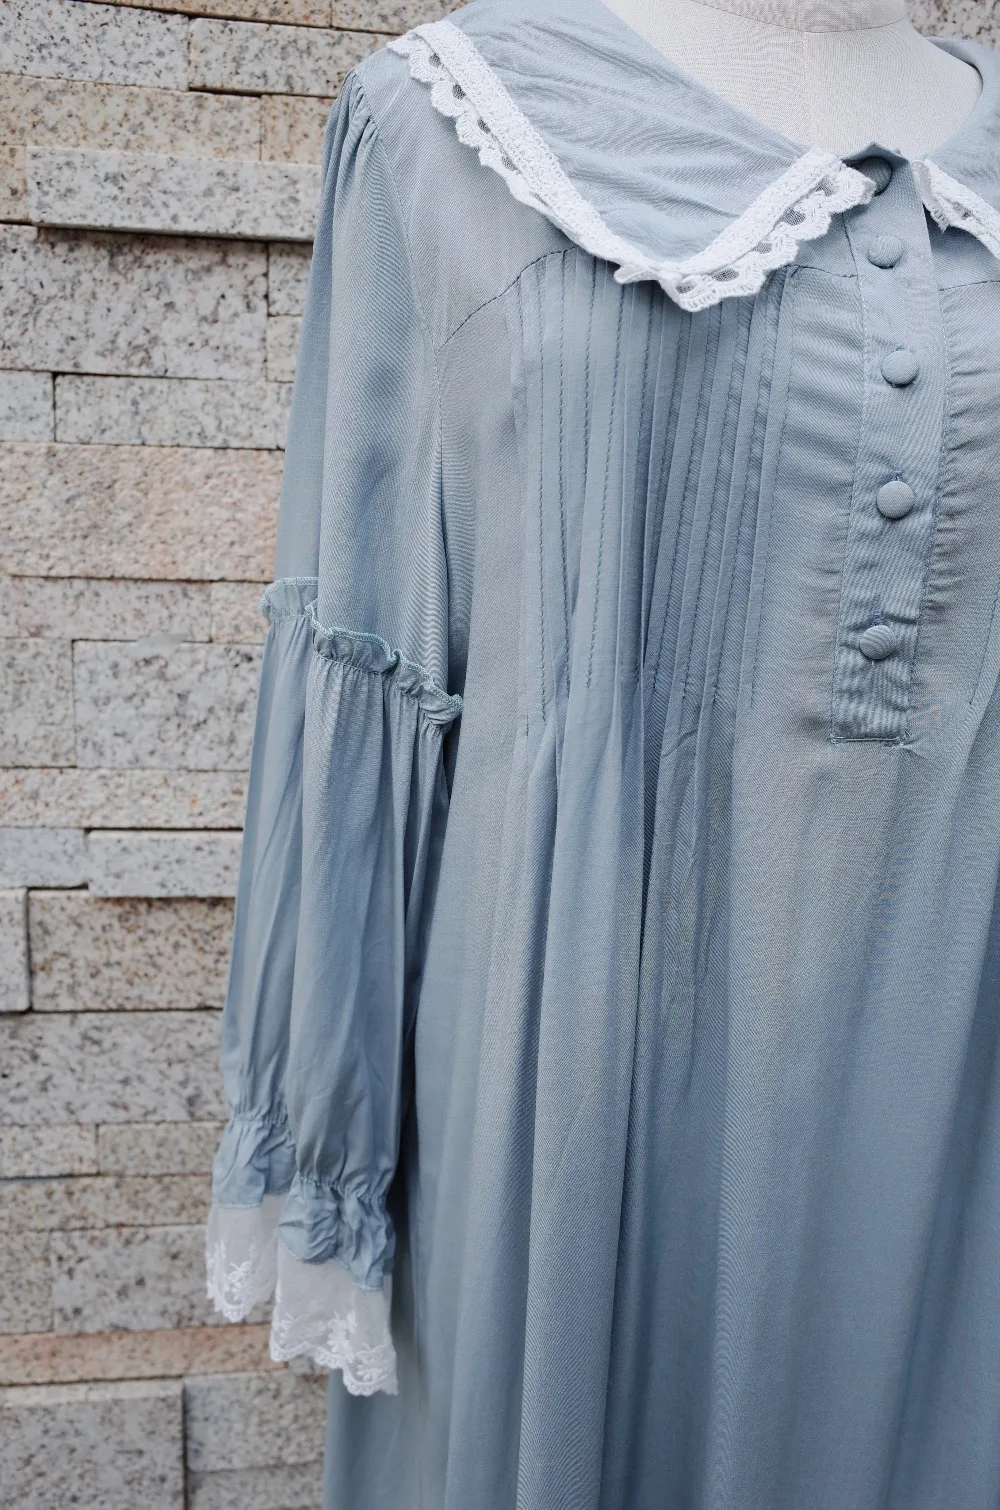 Осень пижамы Для женщин Винтаж ночная рубашка с длинными рукавами и отложным воротником пуговицы спереди рюшами ночной платье плюс